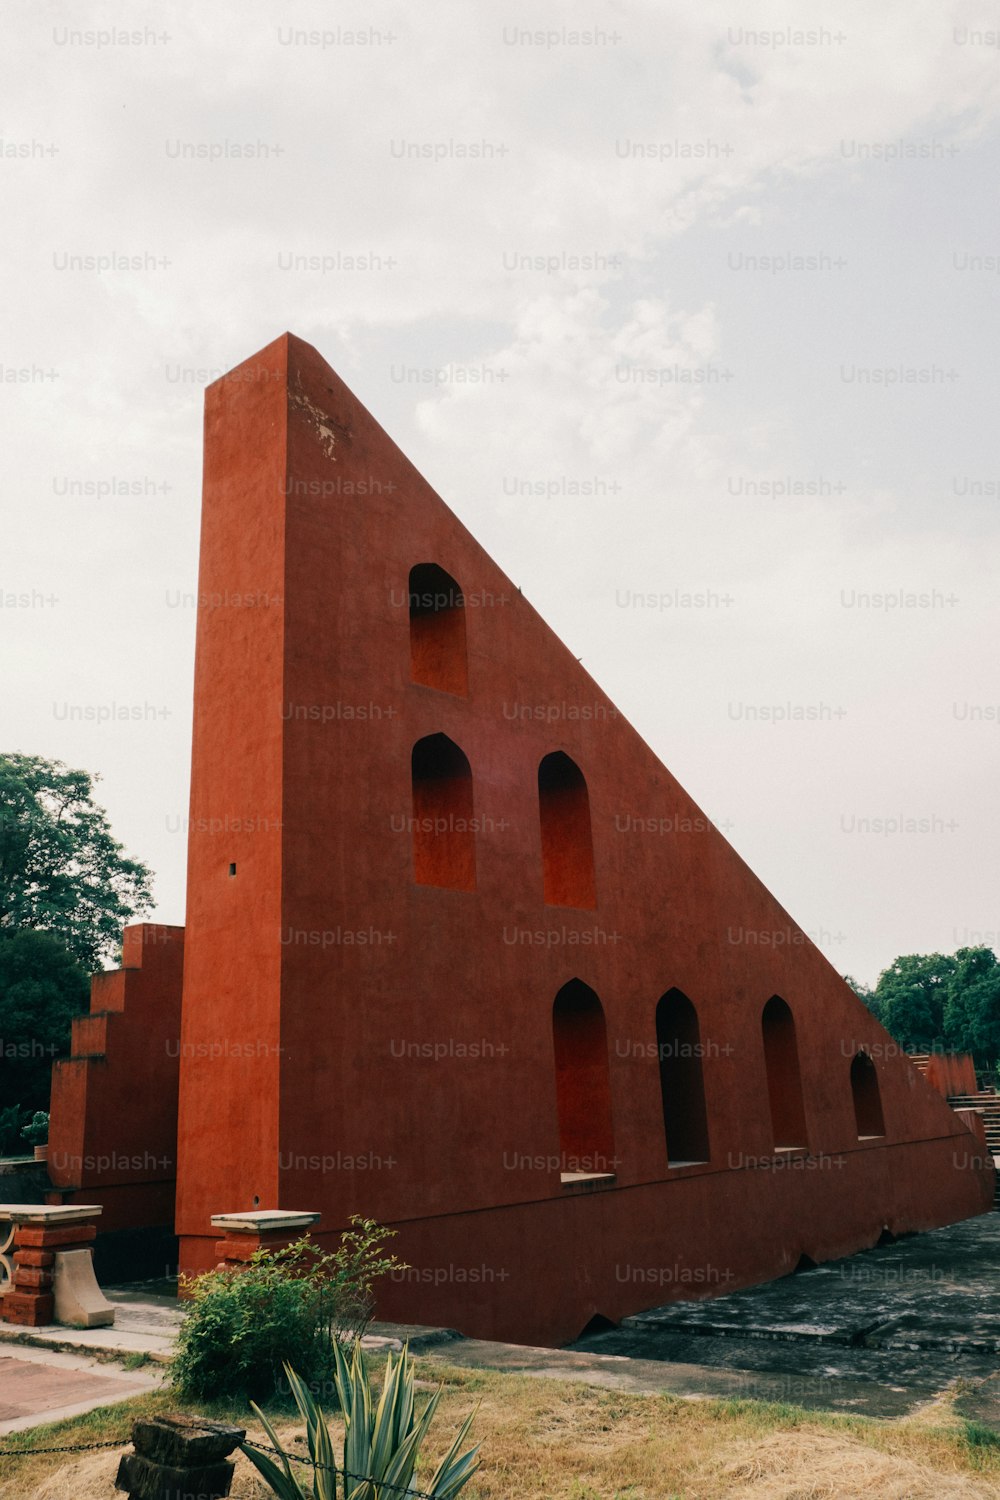 そ��の上に三角形の形をした大きな赤い建物